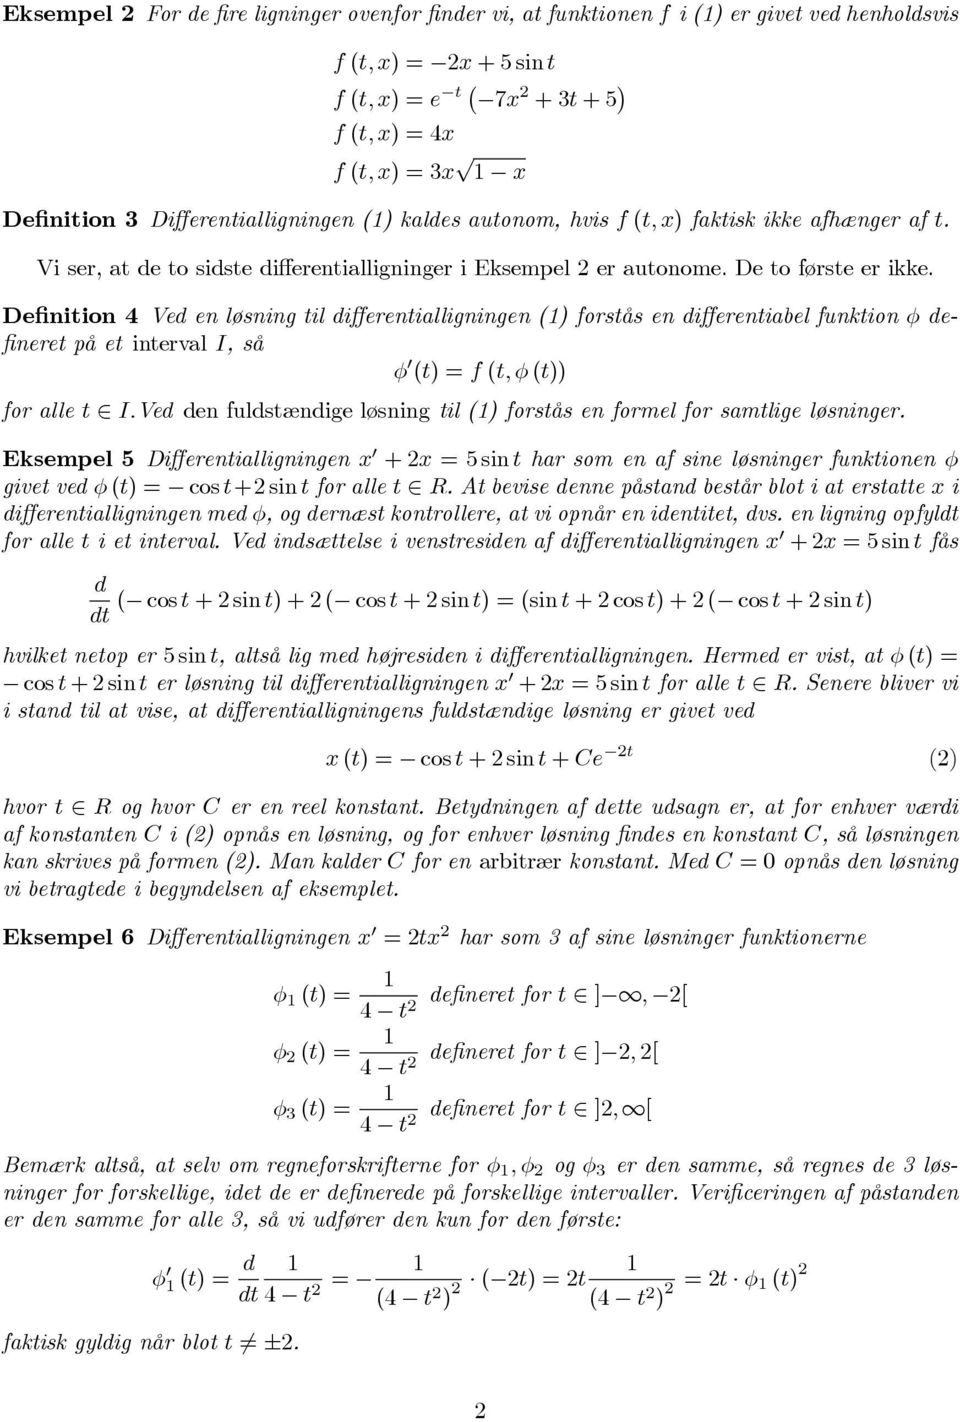 Definition 4 Ved en løsning til differentialligningen() forstås en differentiabel funktion φ defineretpået intervali,så φ (t)=f(t,φ(t)) for alle t I.